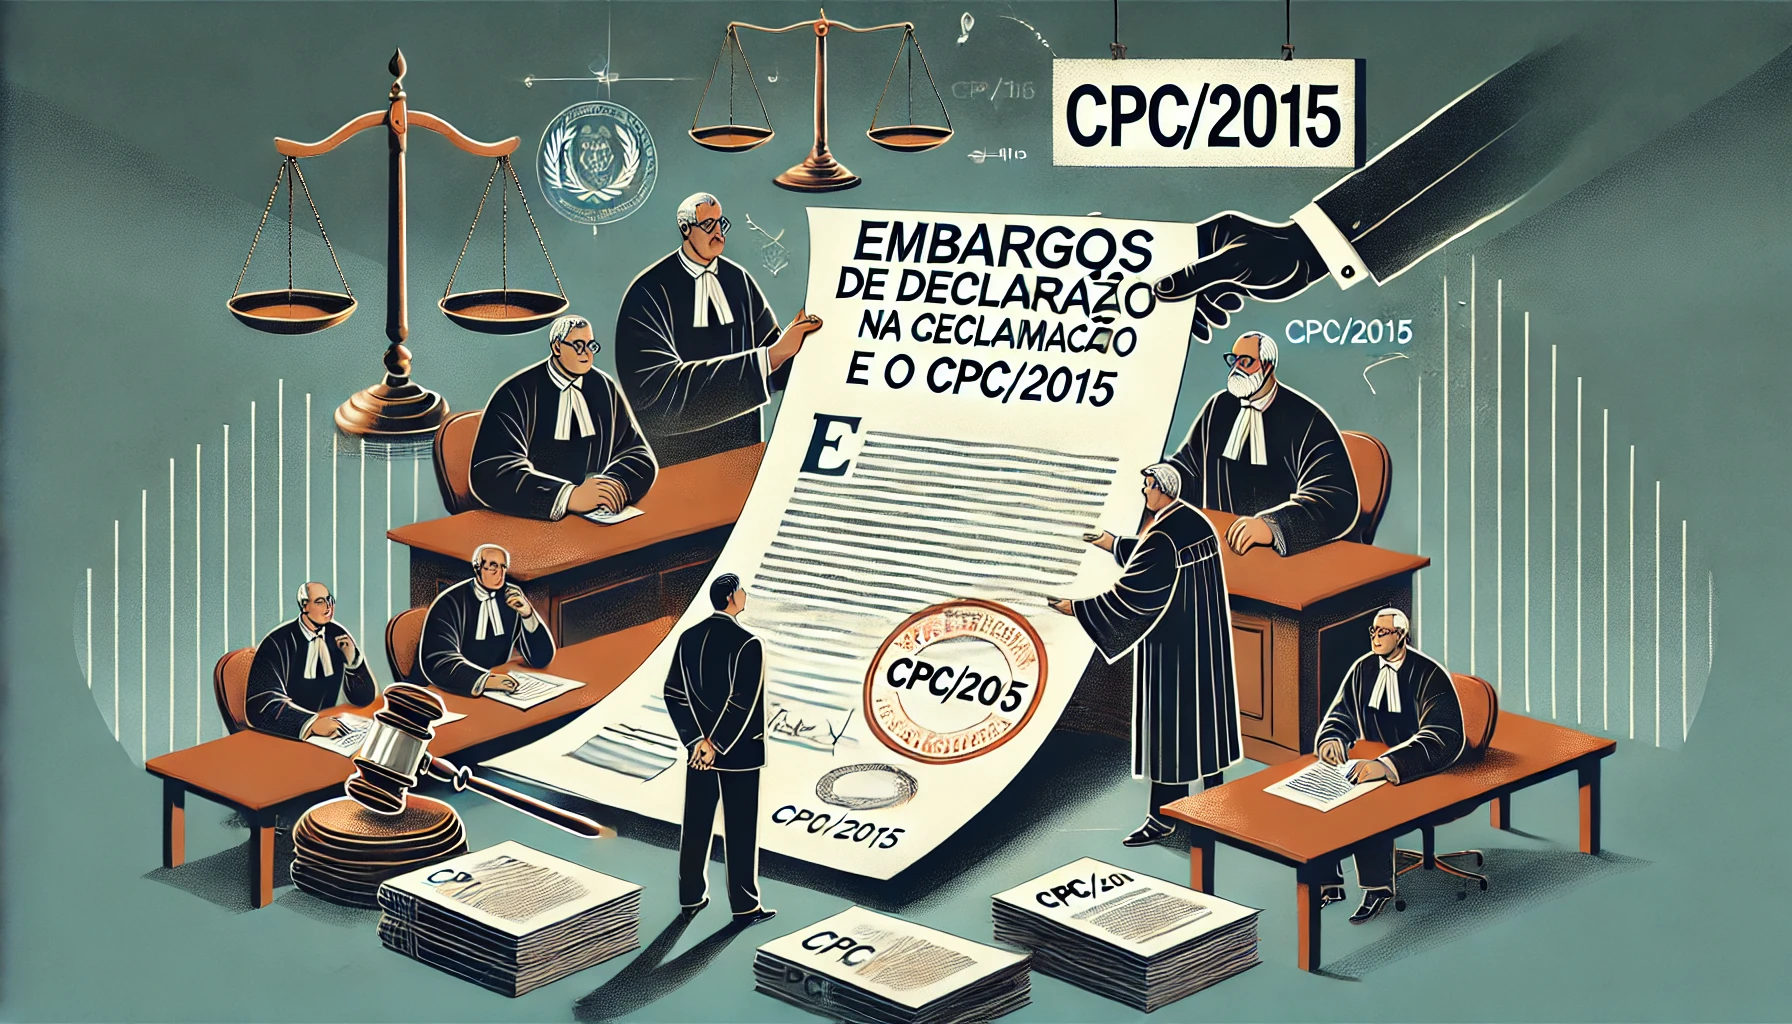 Embargos de Declaração na Reclamação e o CPC/2015